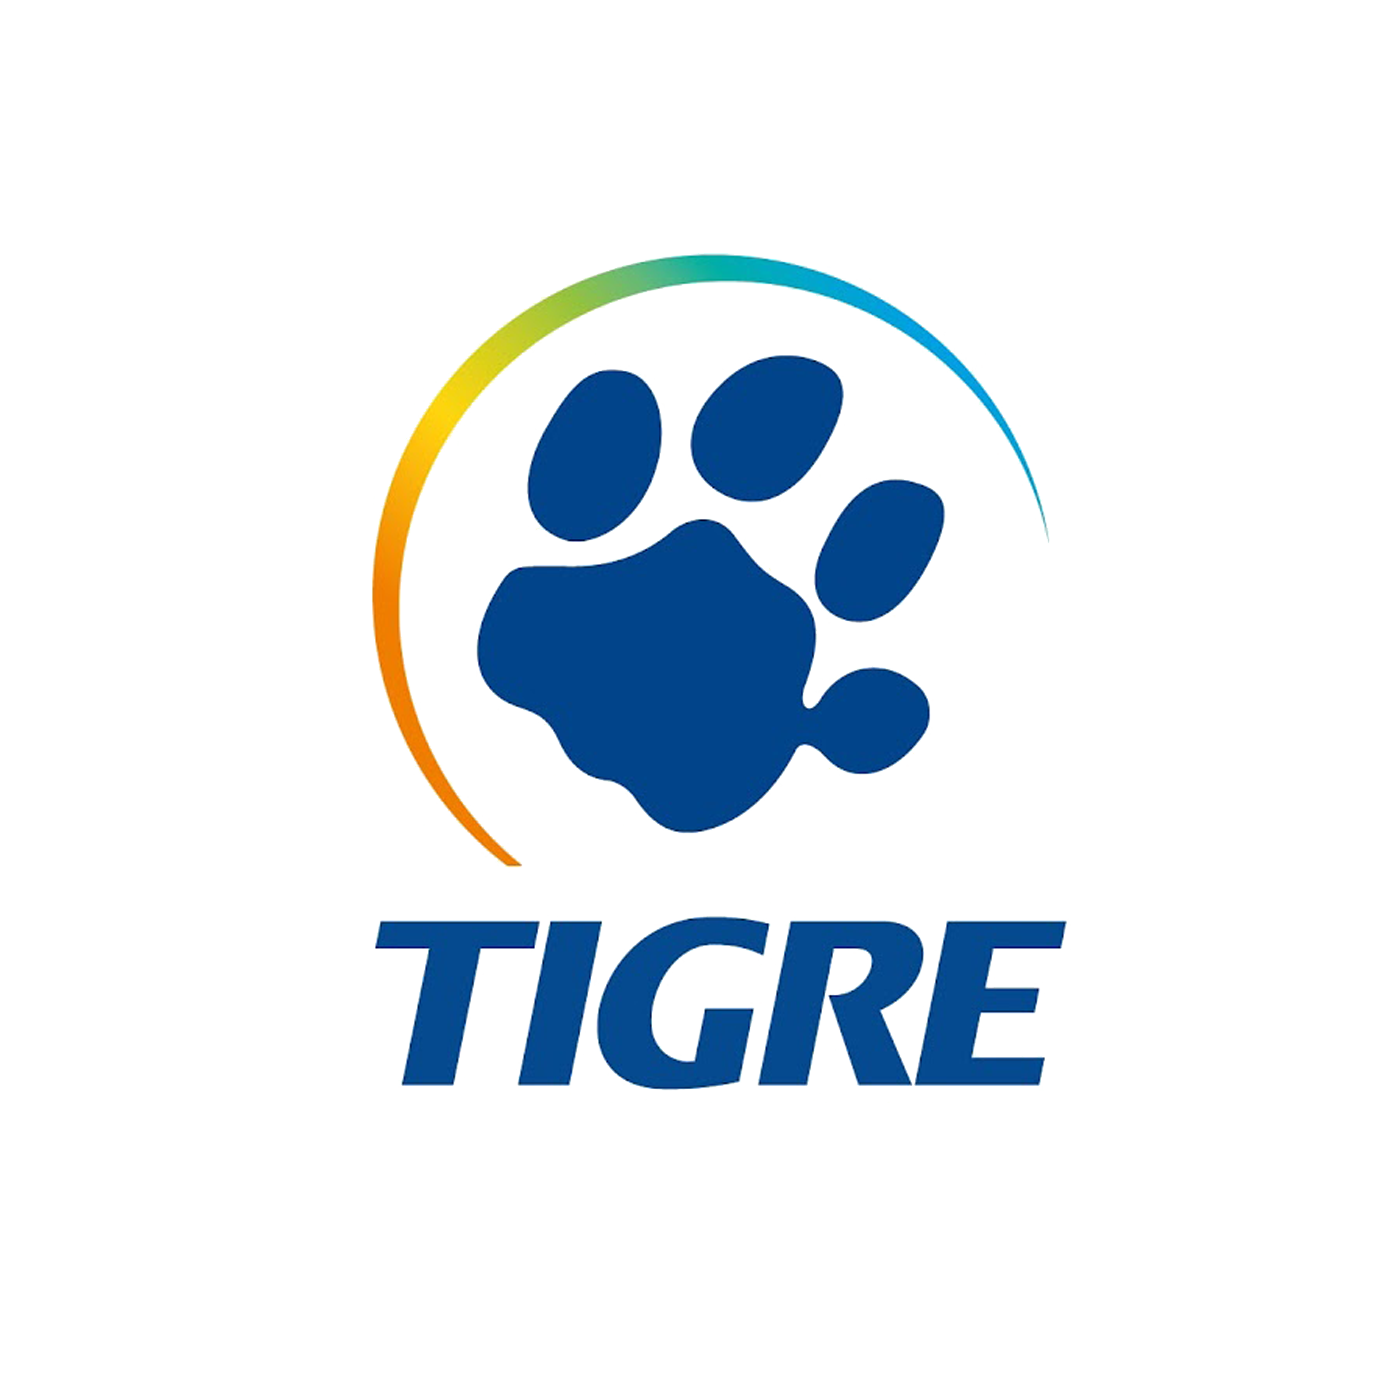 Grupo Tigre